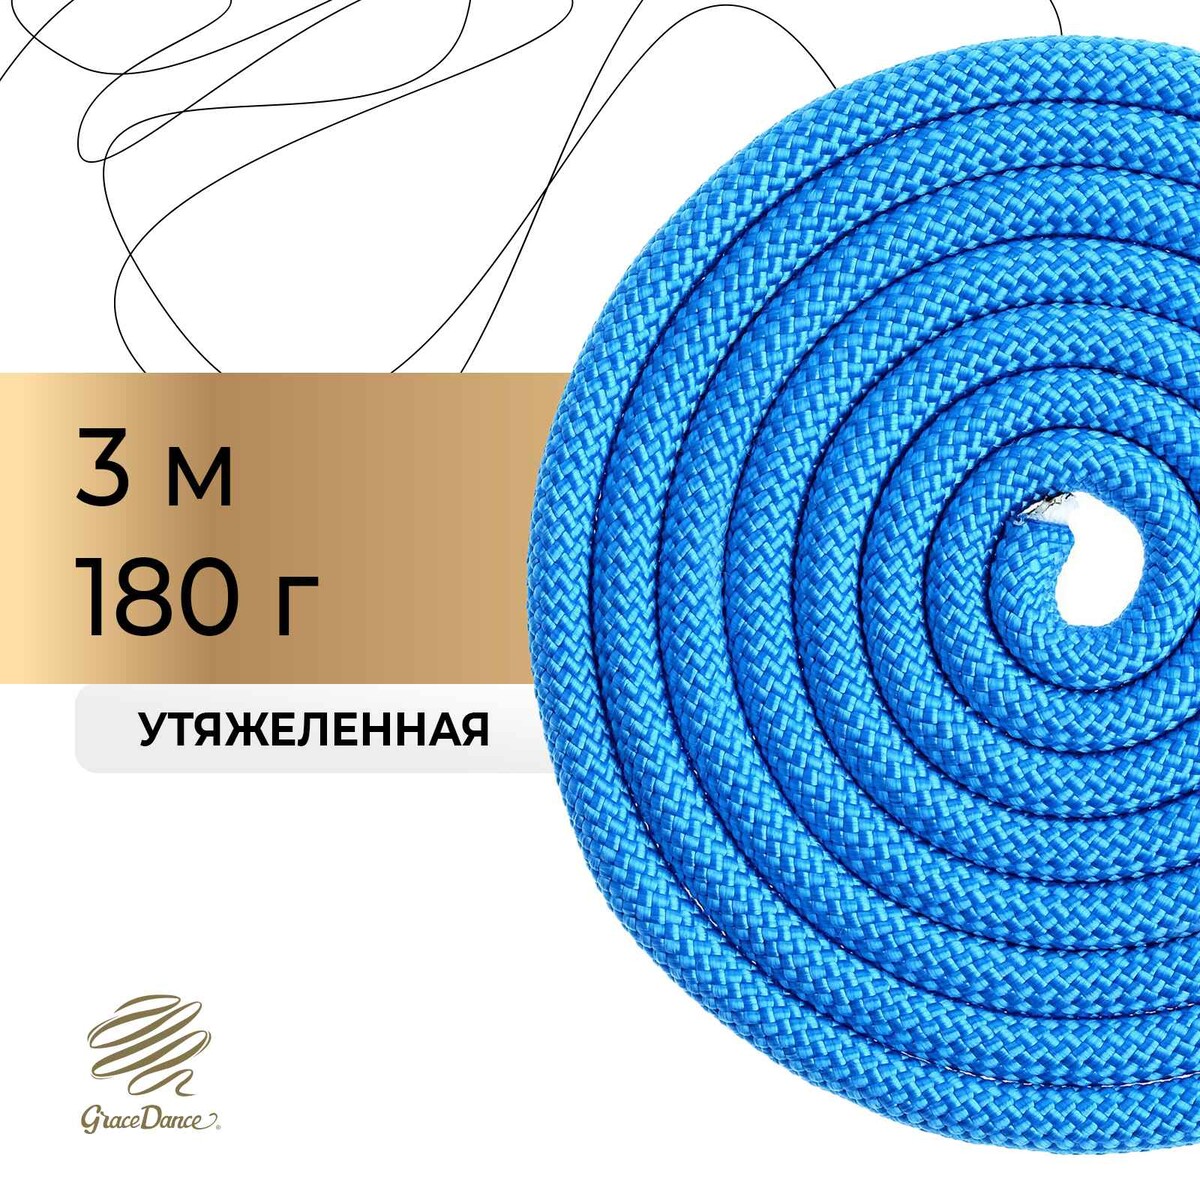 Скакалка для художественной гимнастики утяжеленная grace dance, 3 м, цвет синий скакалка со счетчиком 280см sportex e32630 1 синий